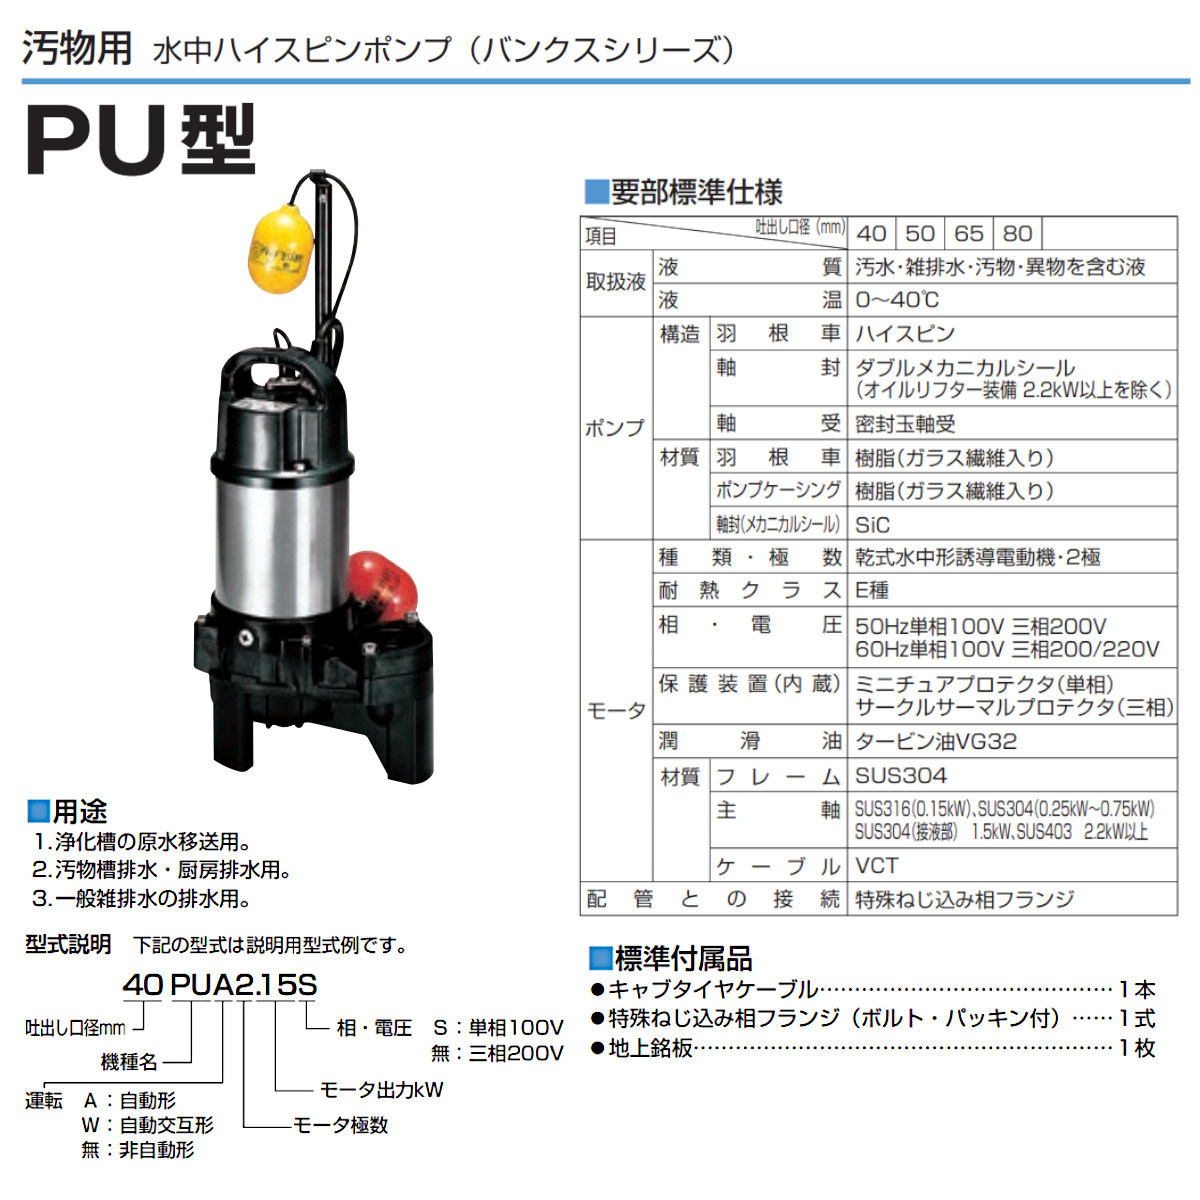 ツルミ 汚物用 水中ポンプ 50PUA2.4S / 50PUA2.4 自動形 バンクス